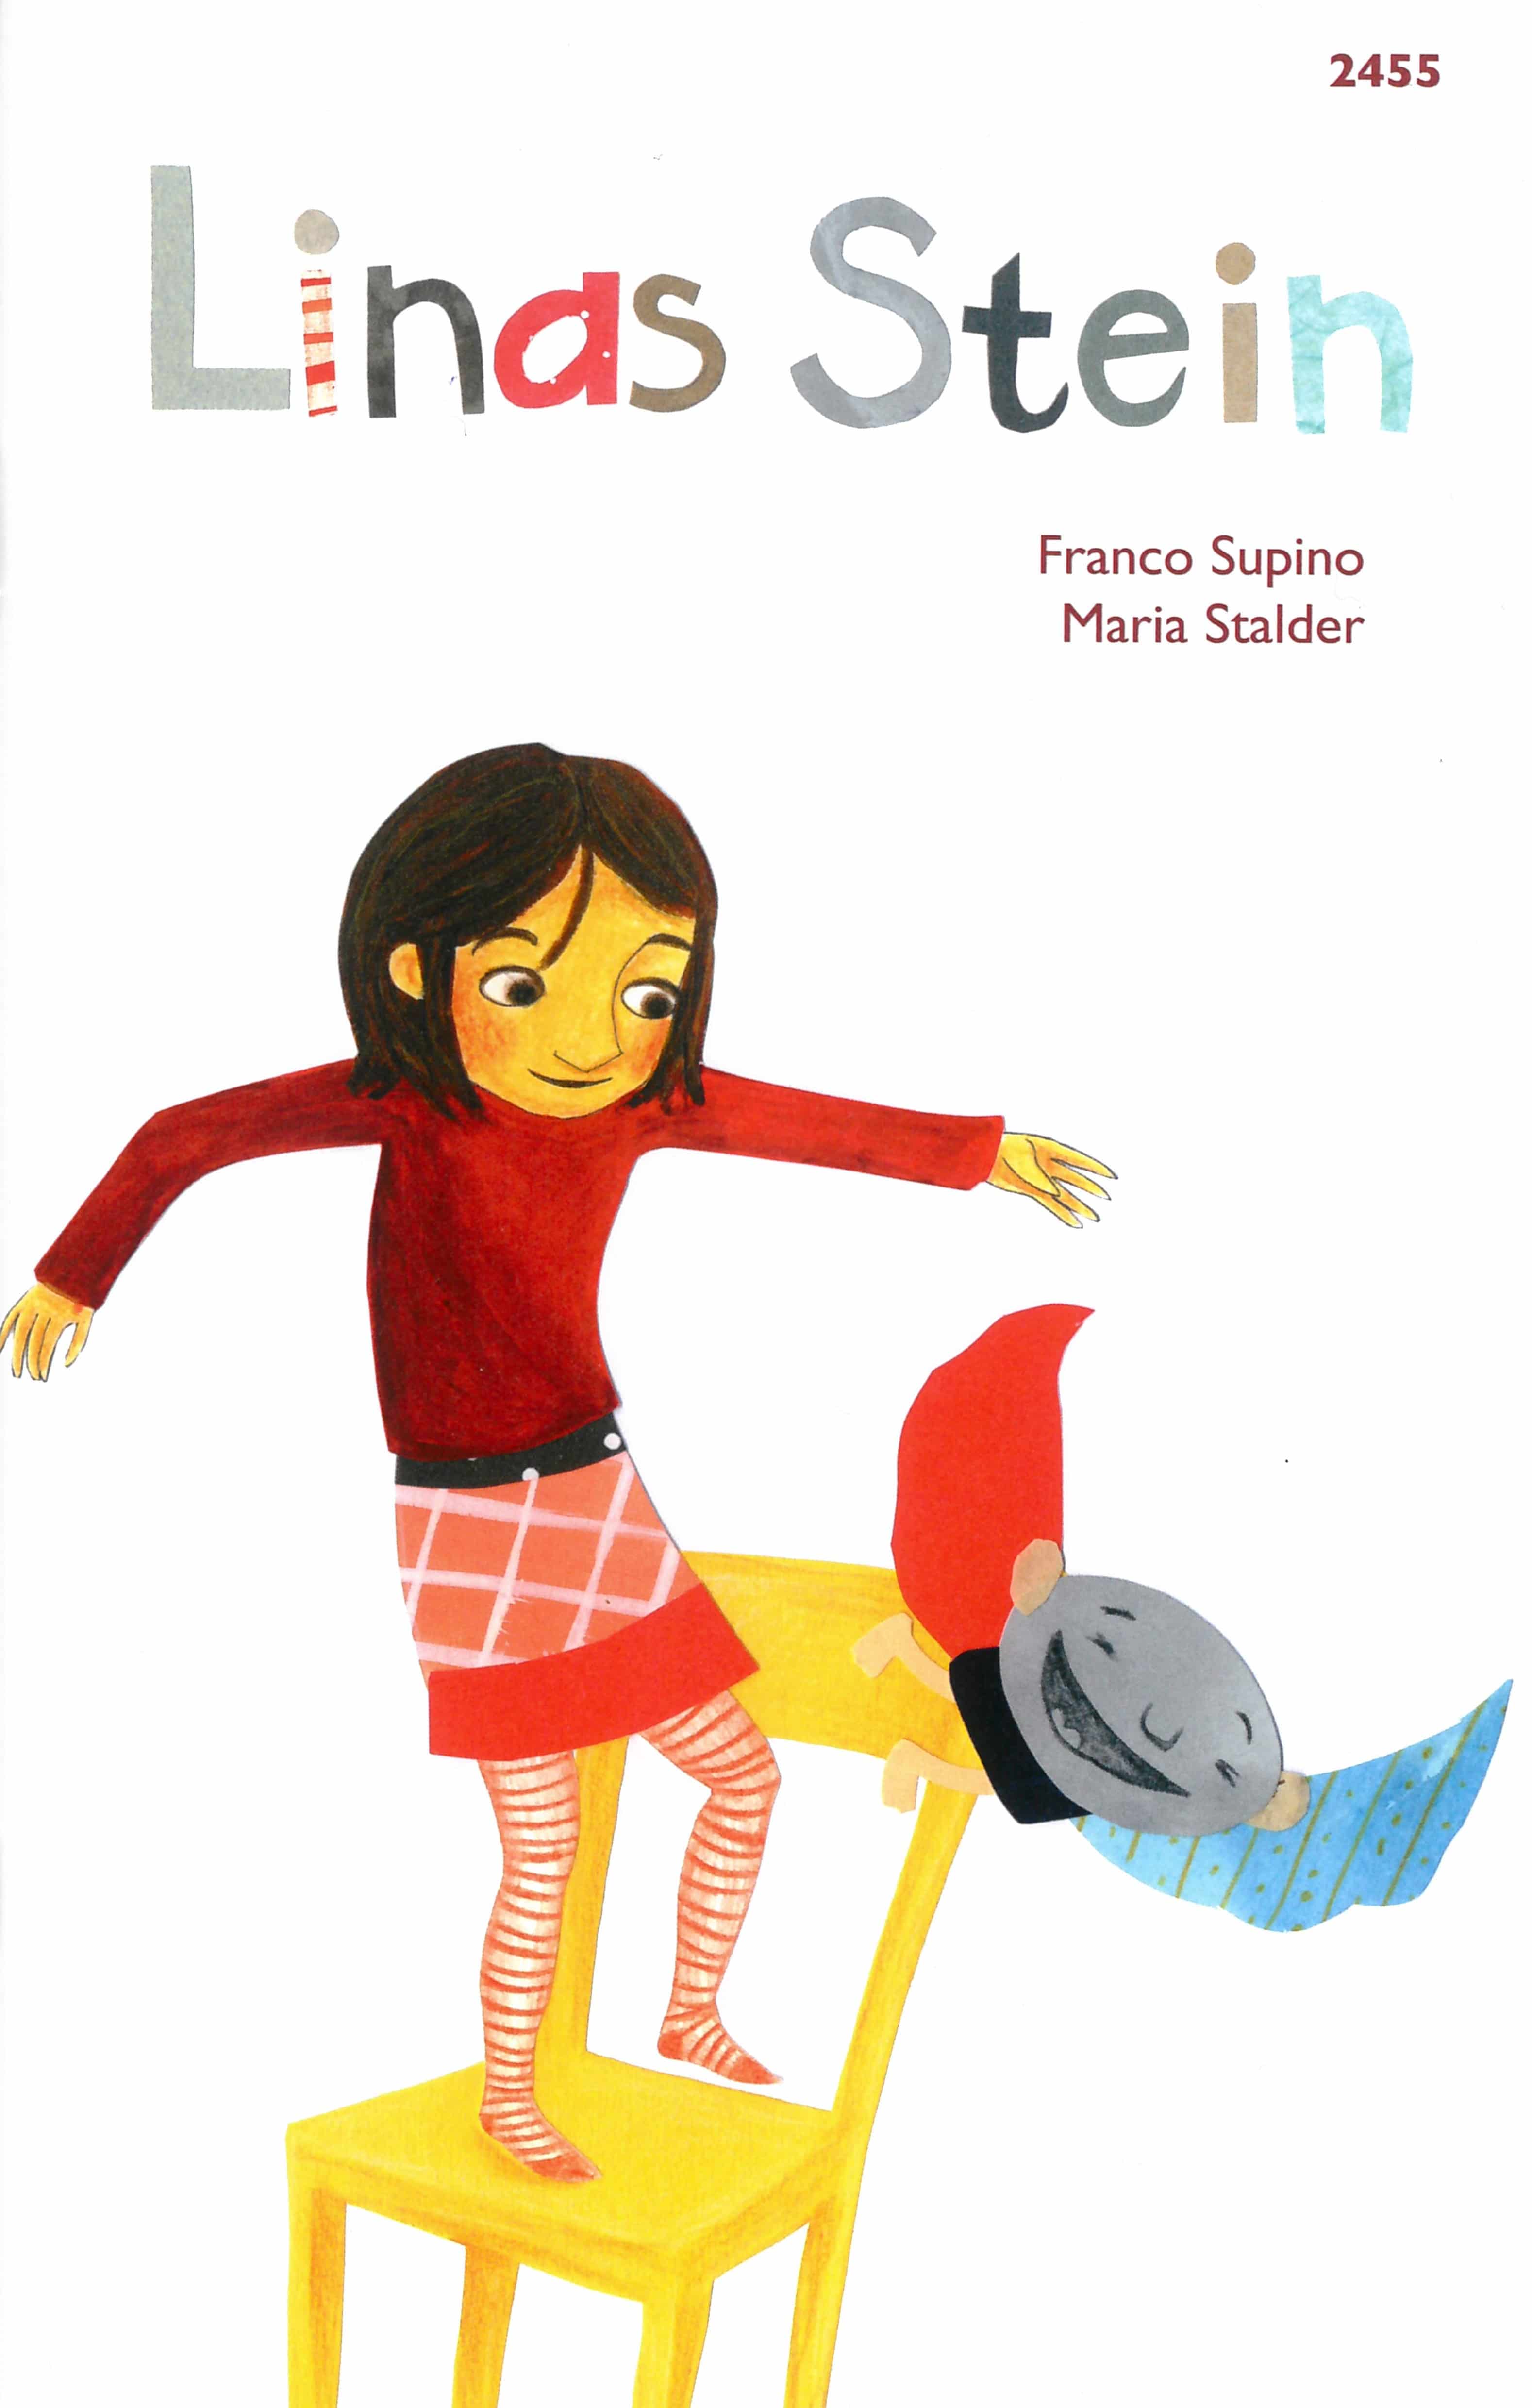 Linas Stein, ein Kinderbuch von Franco Supino, Illustration von Maria Stalder, SJW Verlag, Fantasy